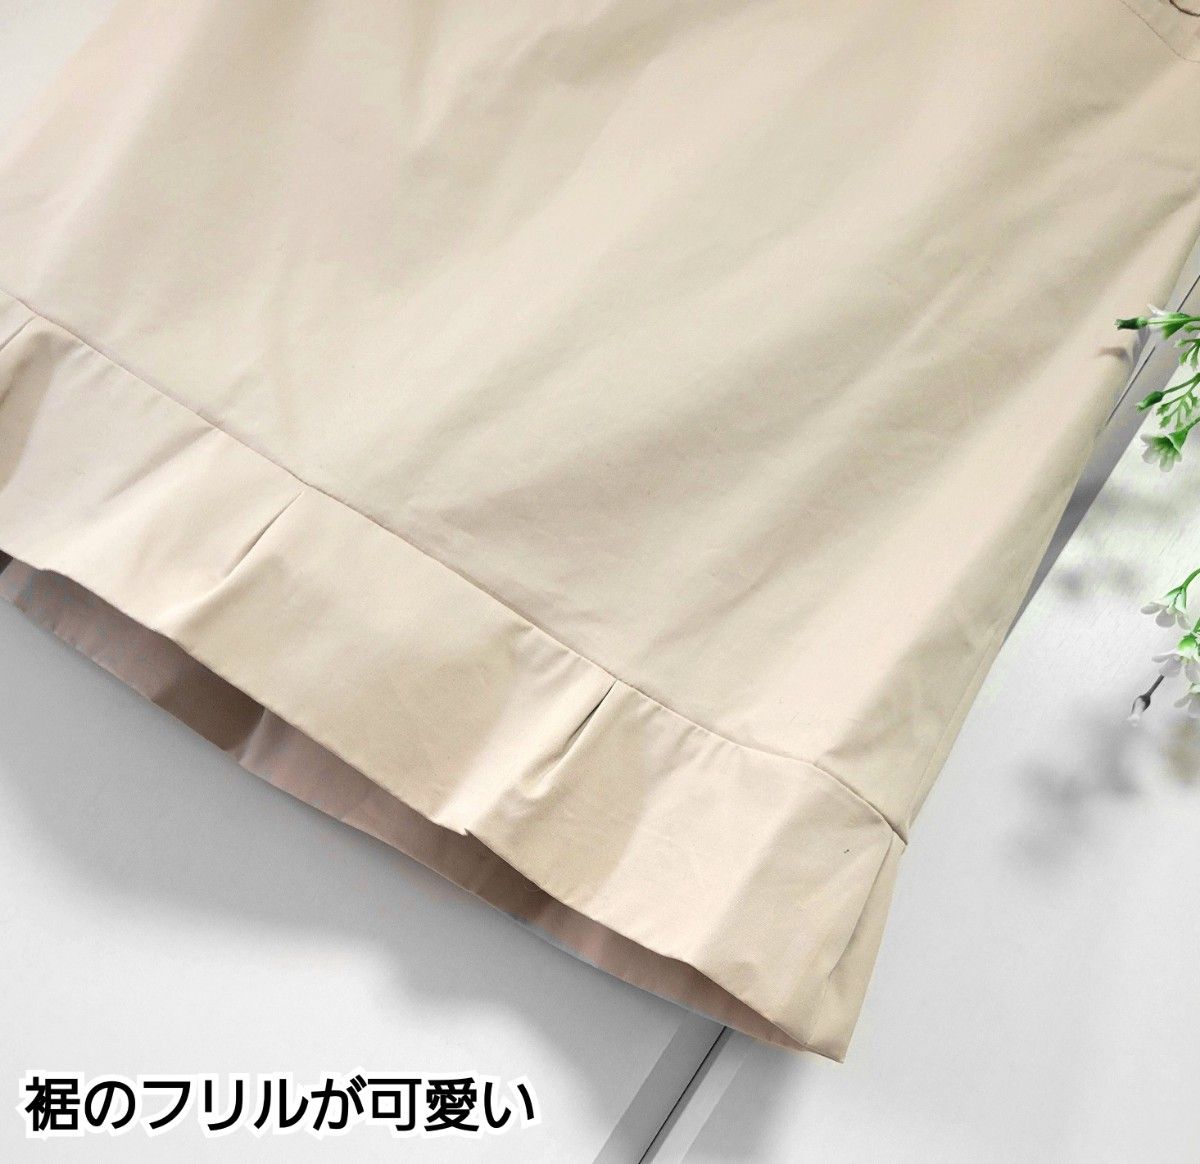 PROPOTION BODY DRESSING 裾フリル ベージュ 美シルエット タイト  スカート S~M/2